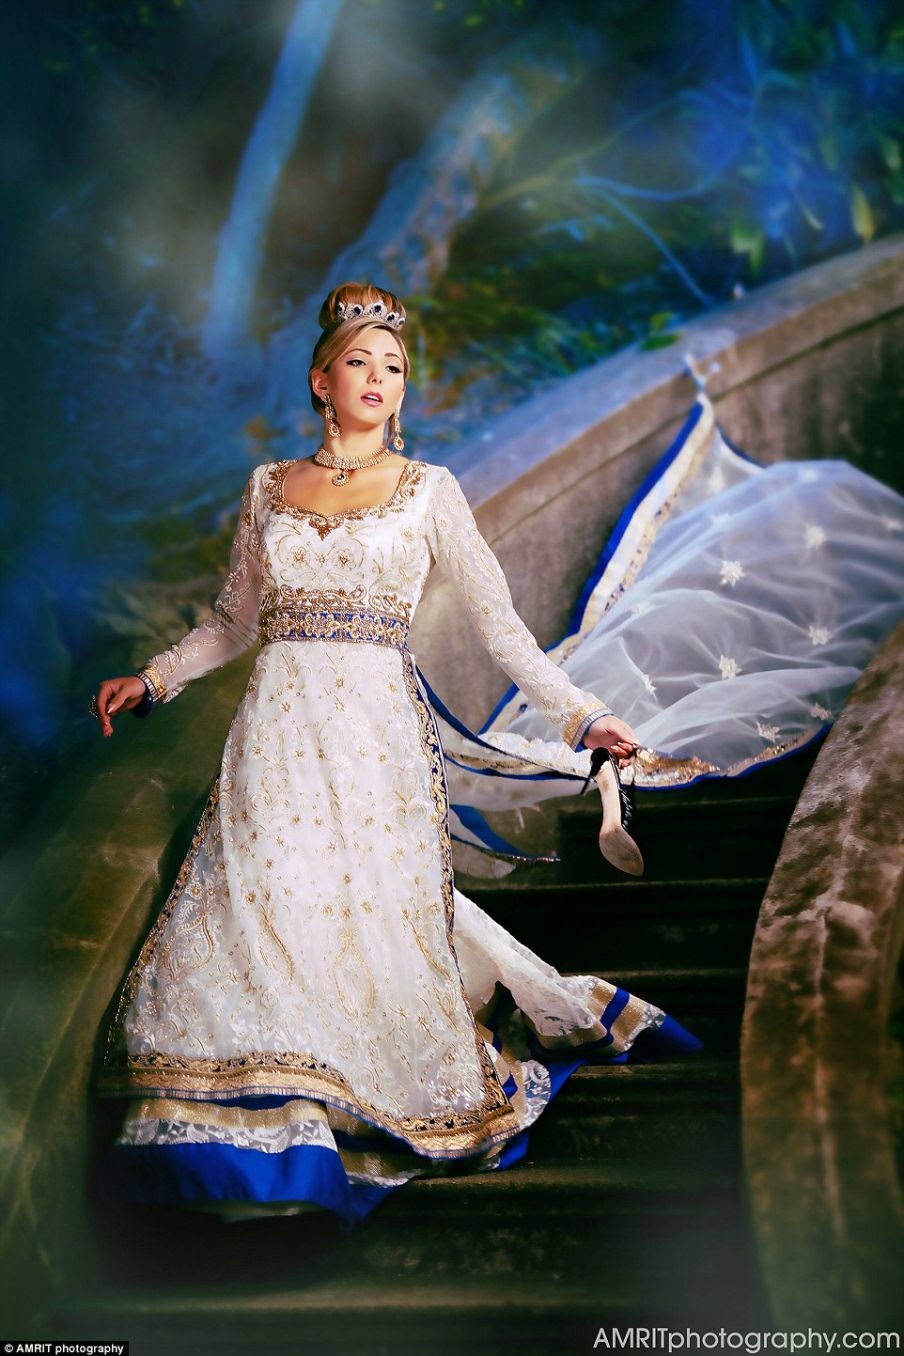 The vision behind Cinderella was Annie Leibovitz's shot.